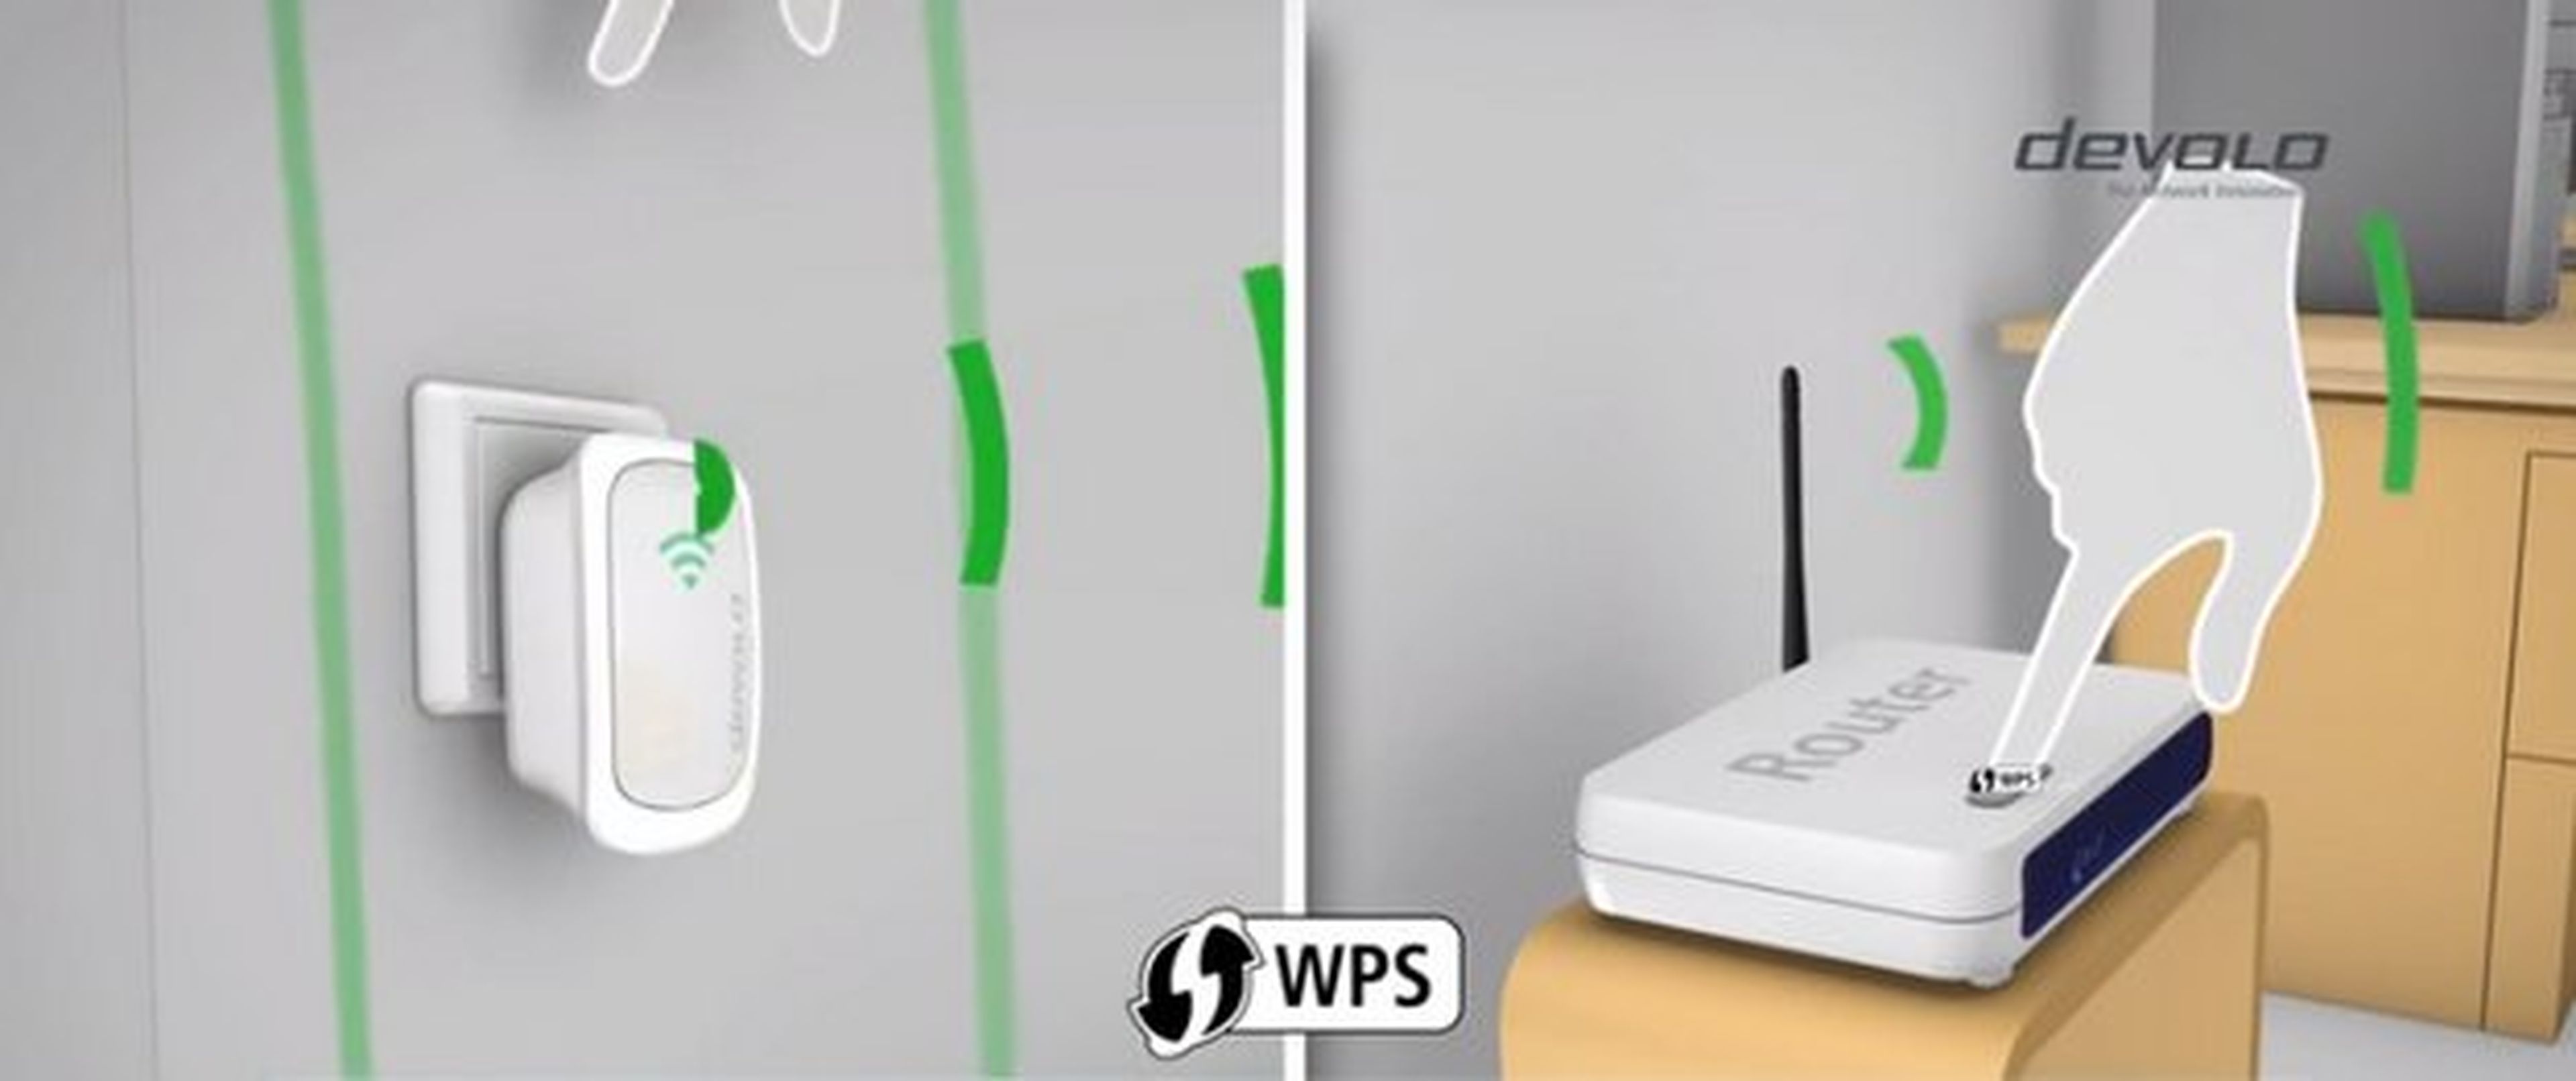 Repetidores WiFi: Cómo funcionan y cuáles hay en el mercado